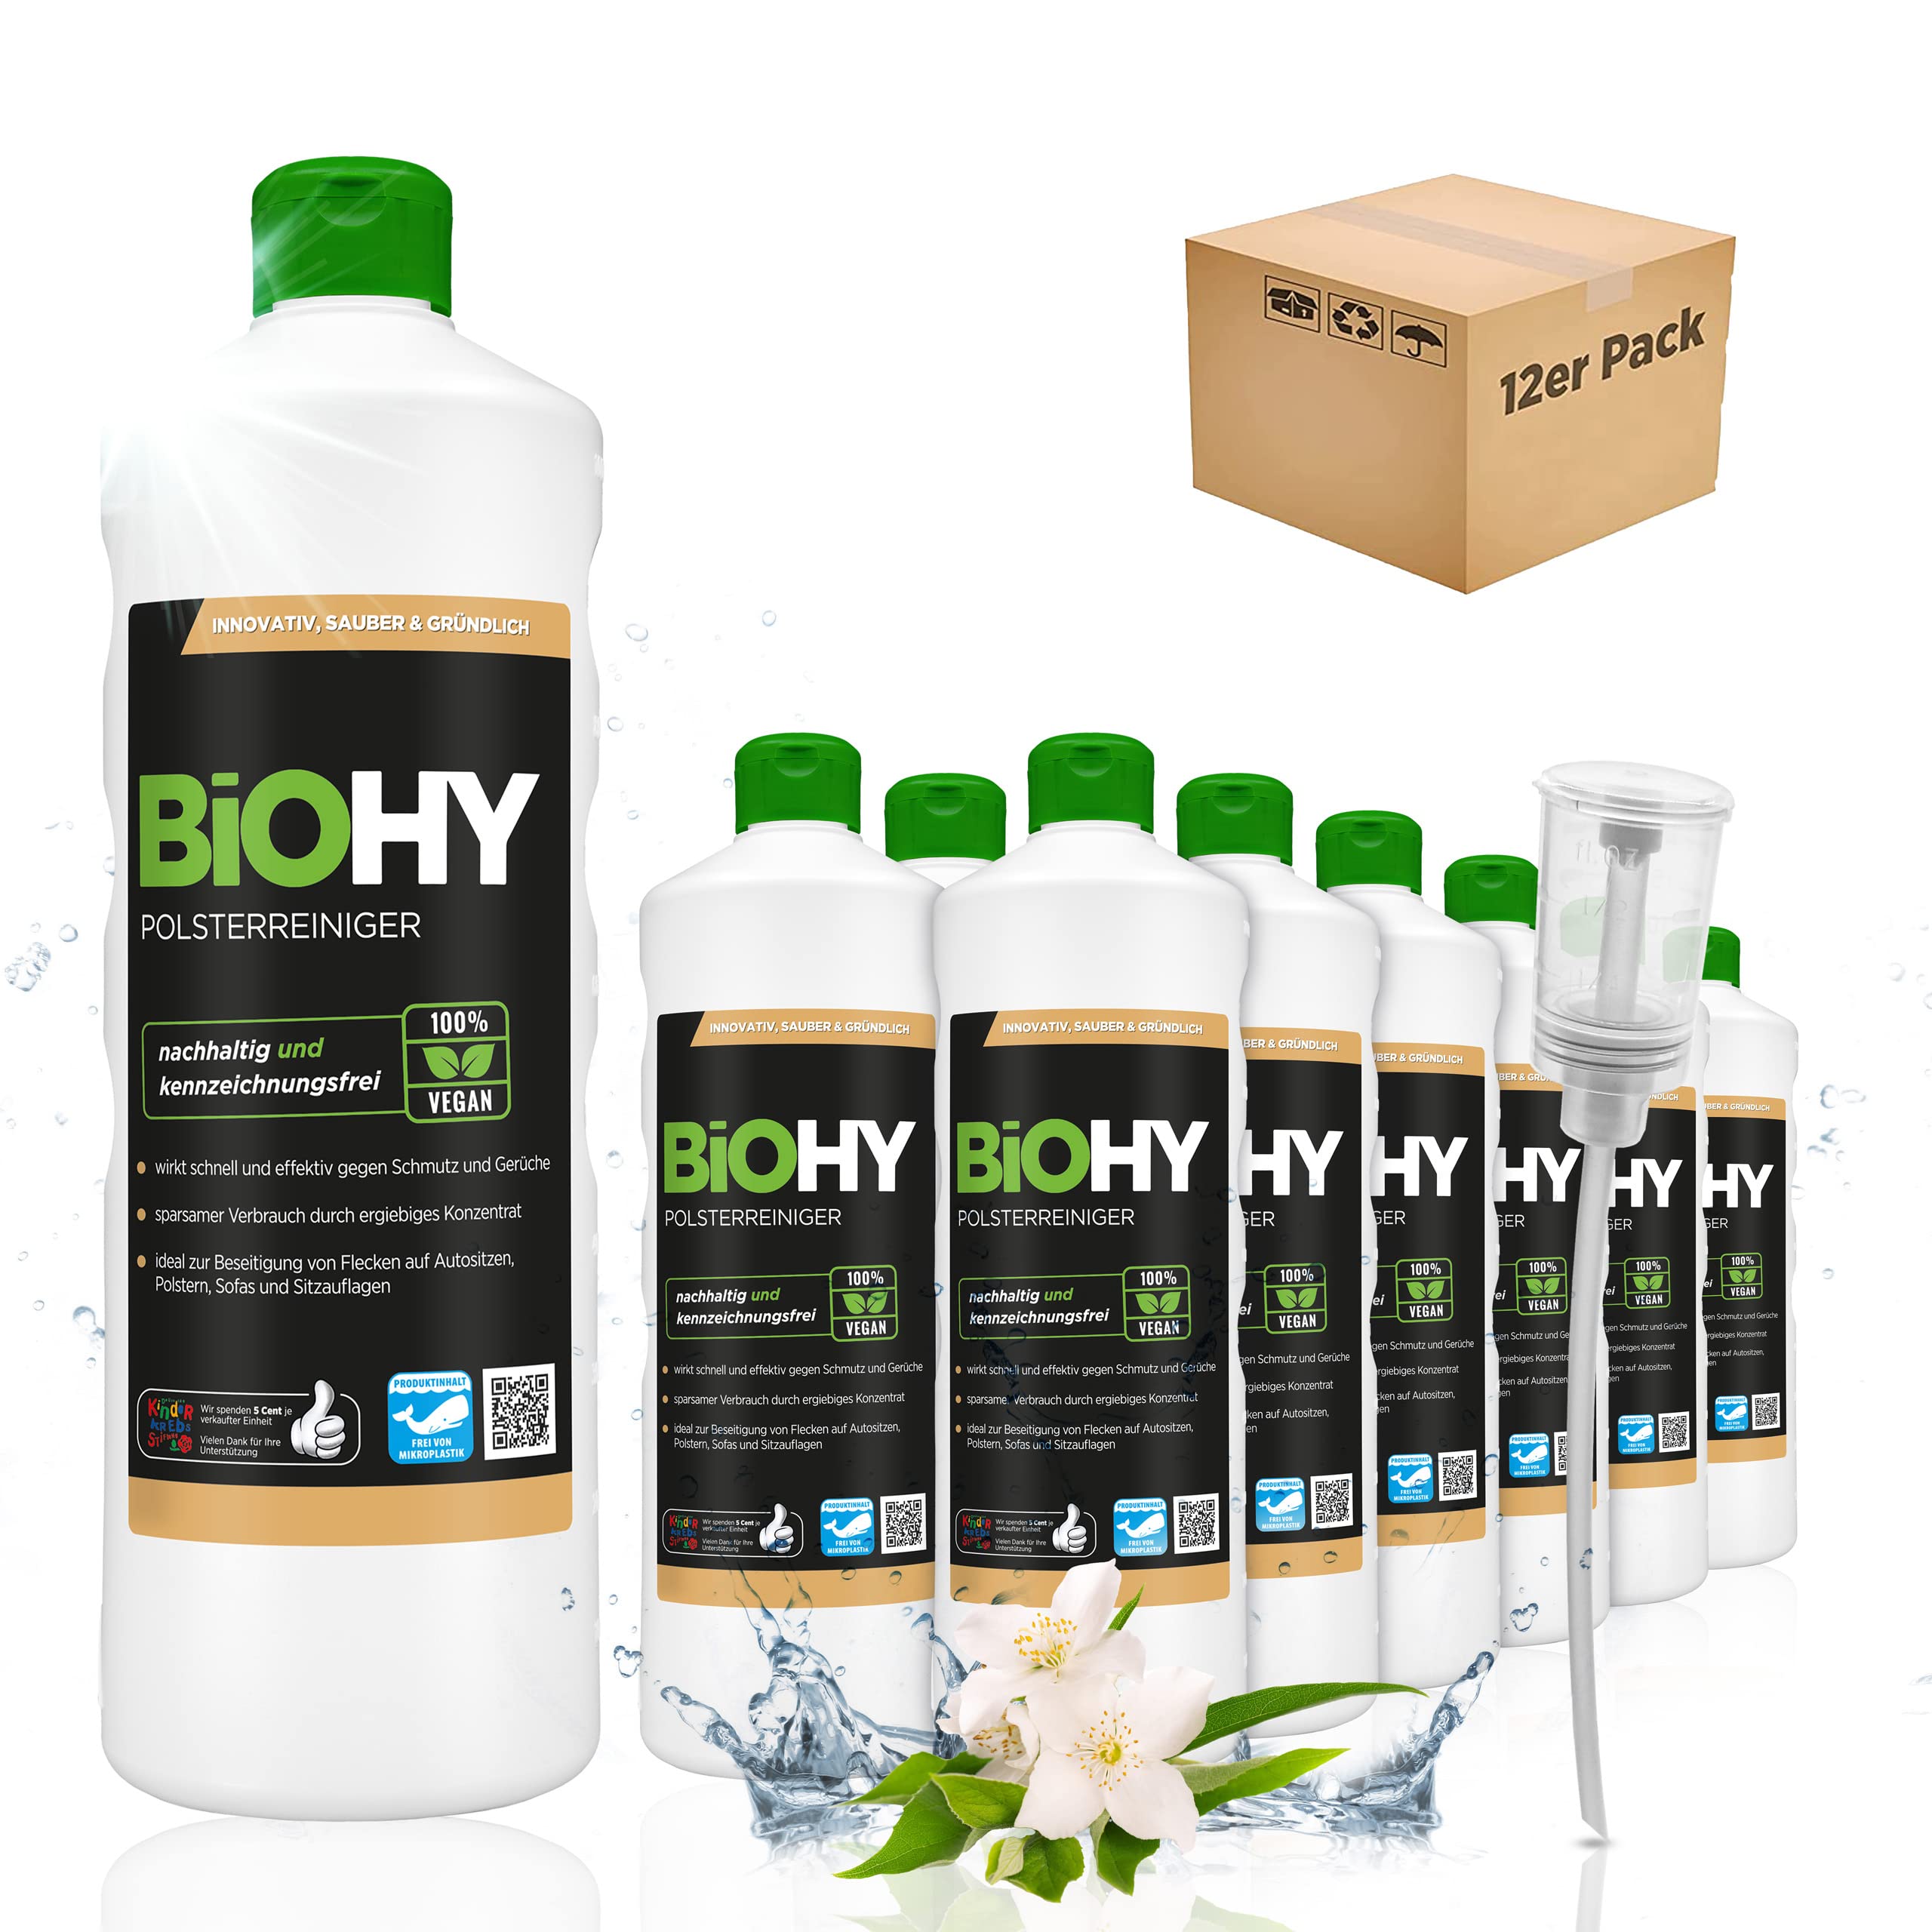 BiOHY Spezial Polsterreiniger (12 x 1 Liter) + Dosierer | Konzentrat für Sofas, Polstermöbel, Teppiche & Textilien | für Nasssauger & Waschsauger | Fleckentferner | effektiver Textilerfrischer